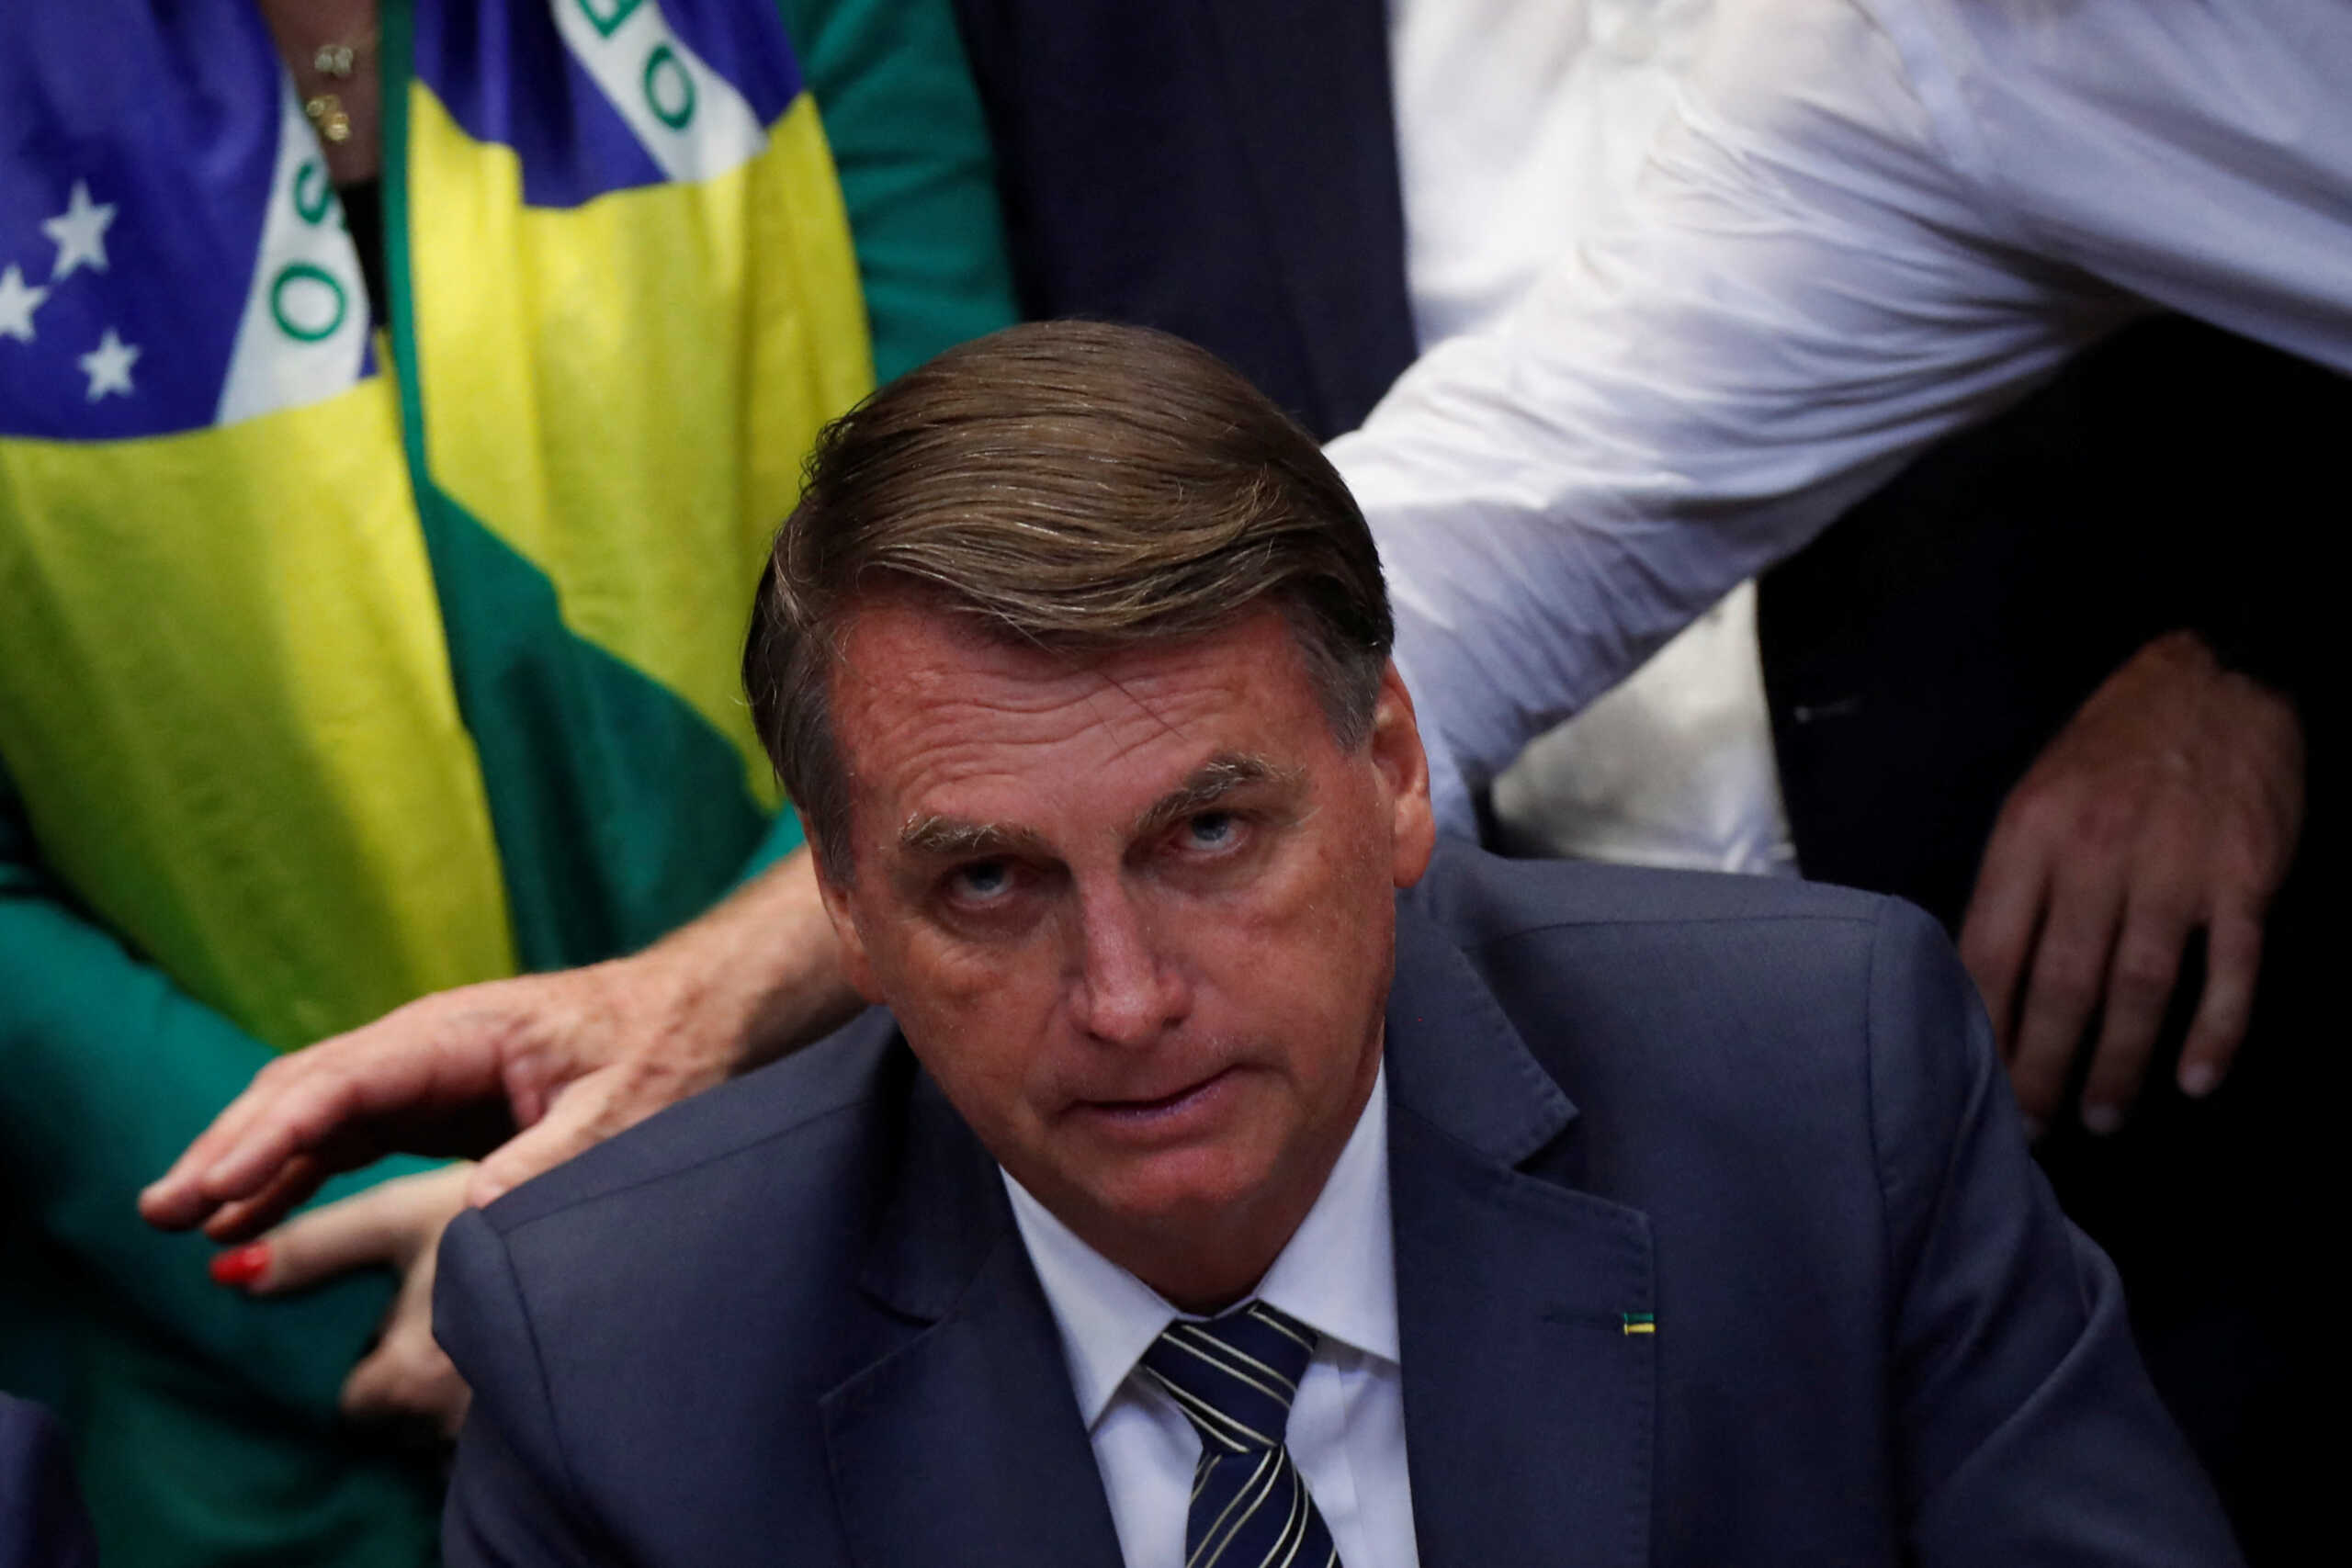 Βραζιλία: Ο Μπολσονάρο αμφισβητεί και πάλι το εκλογικό σύστημα χωρίς ίχνος απόδειξης